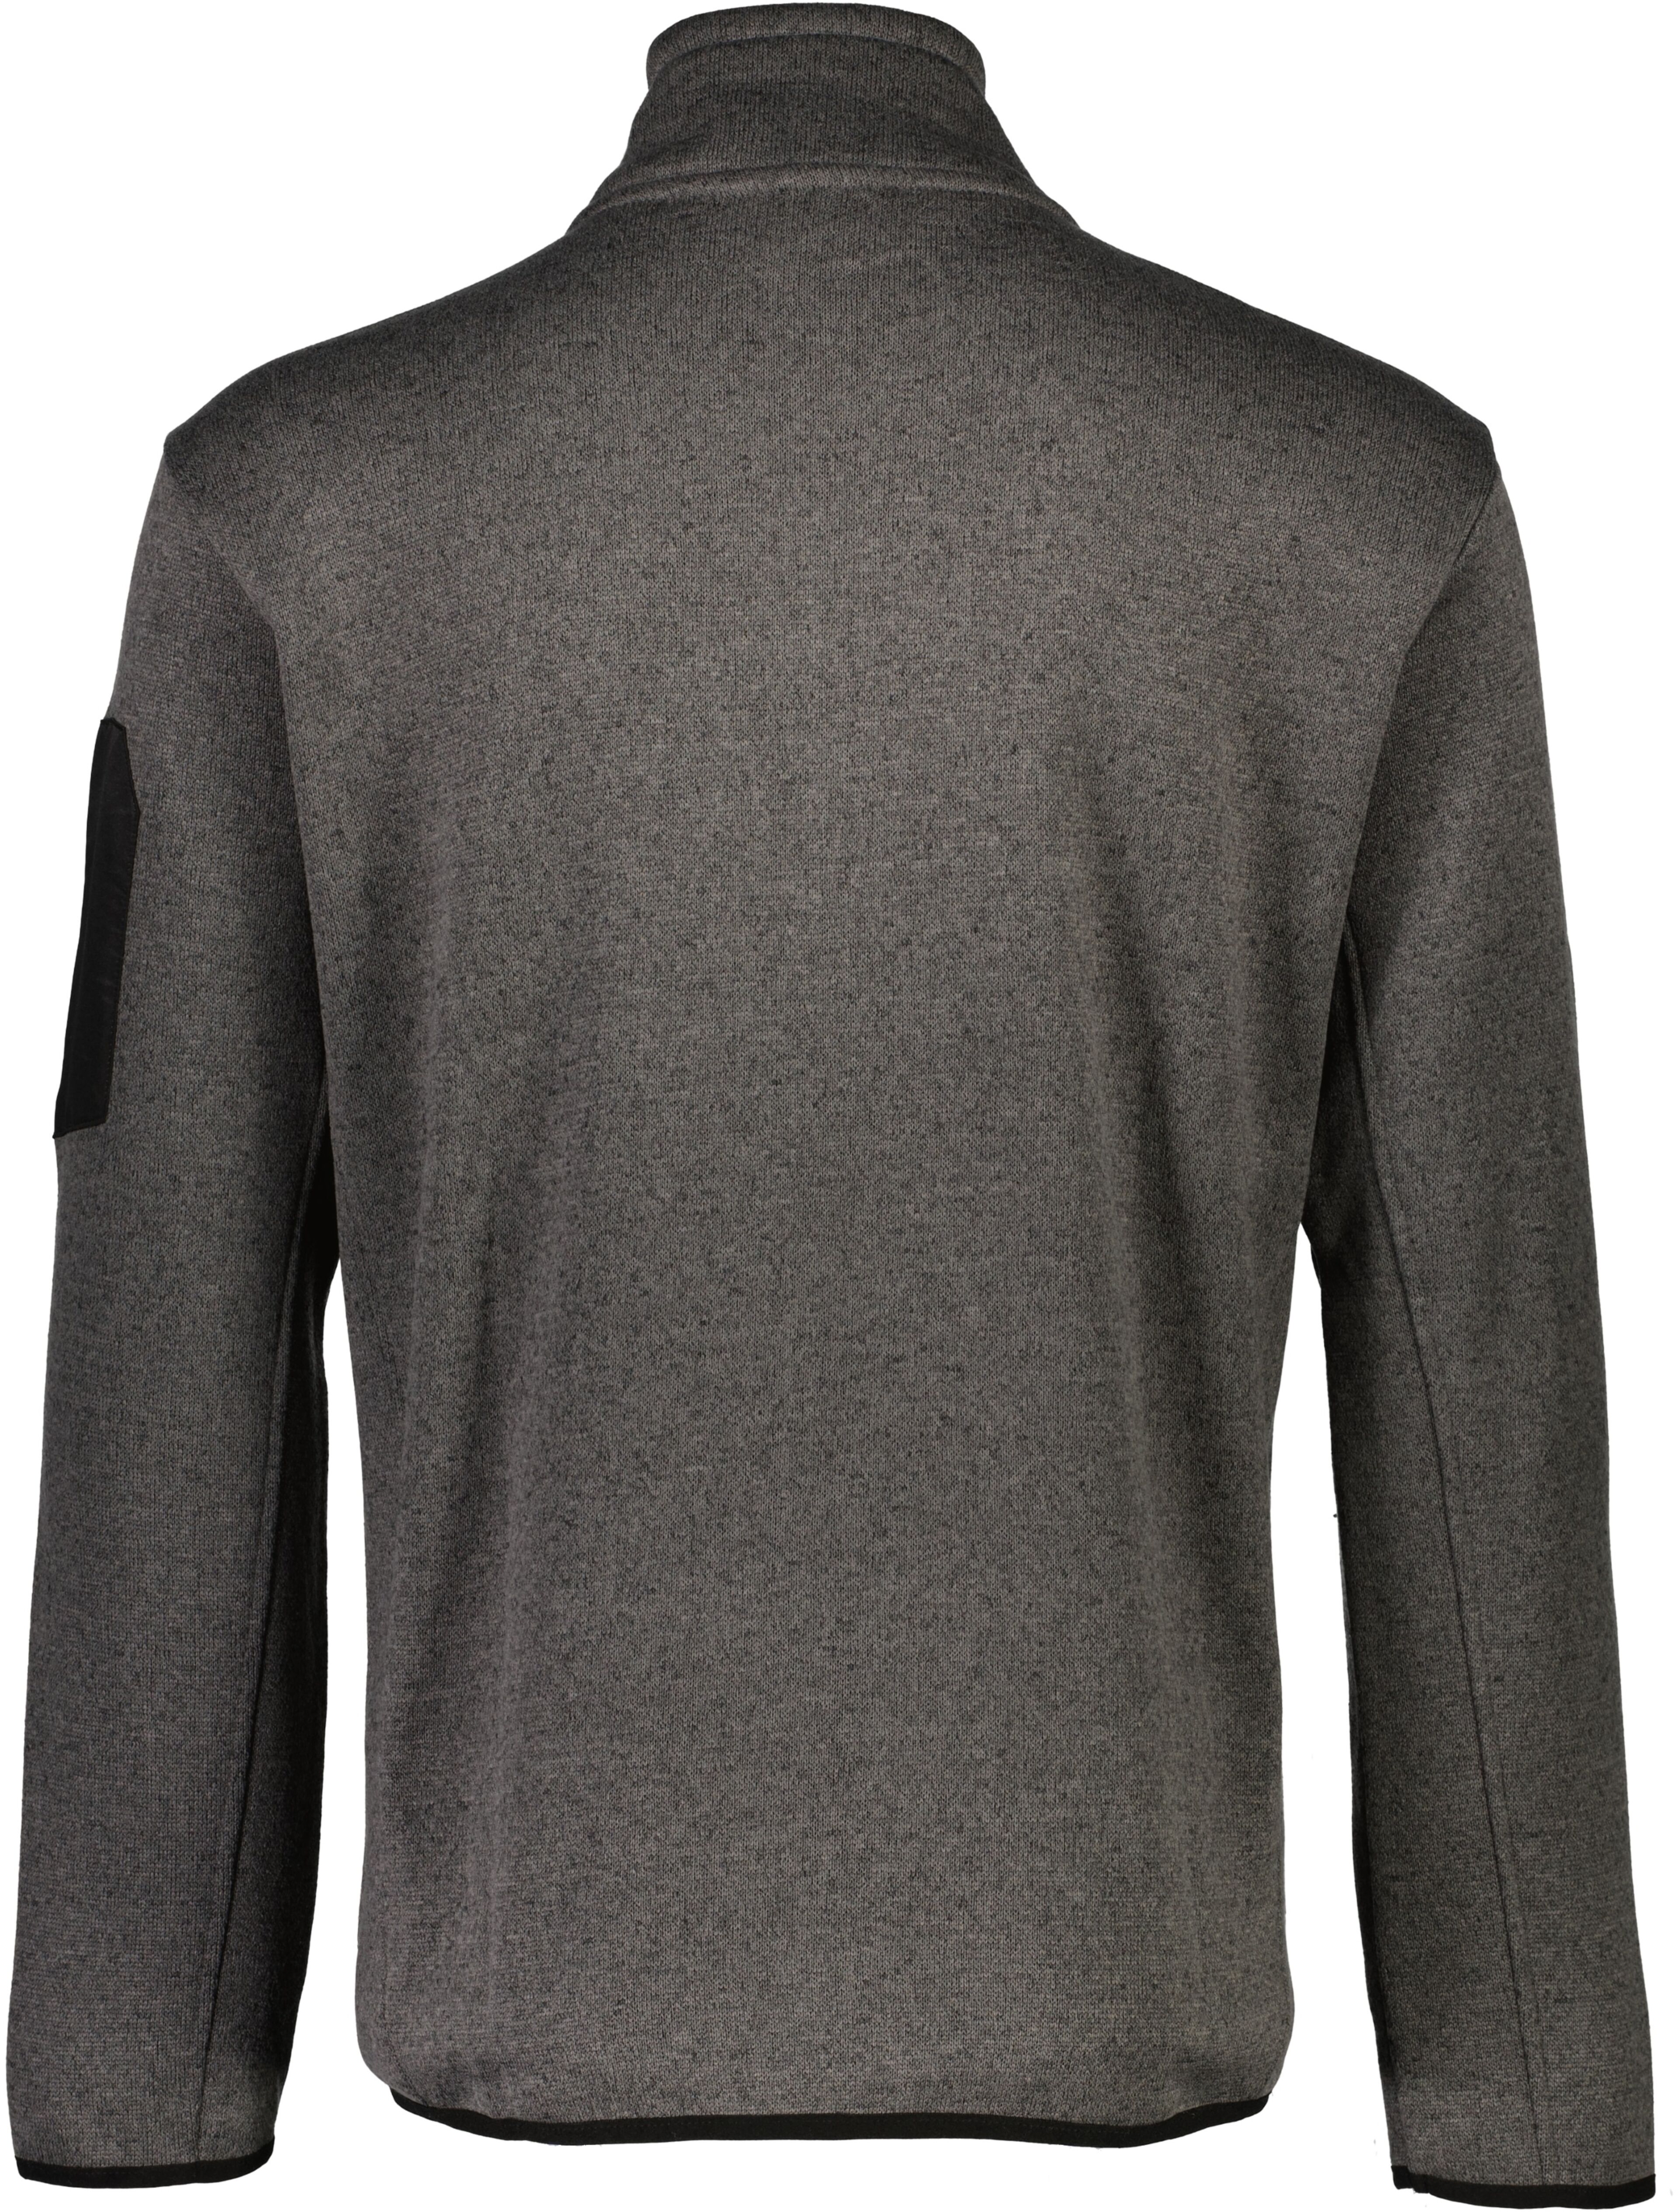 Sweatshirt | Comfort fit 30-750011